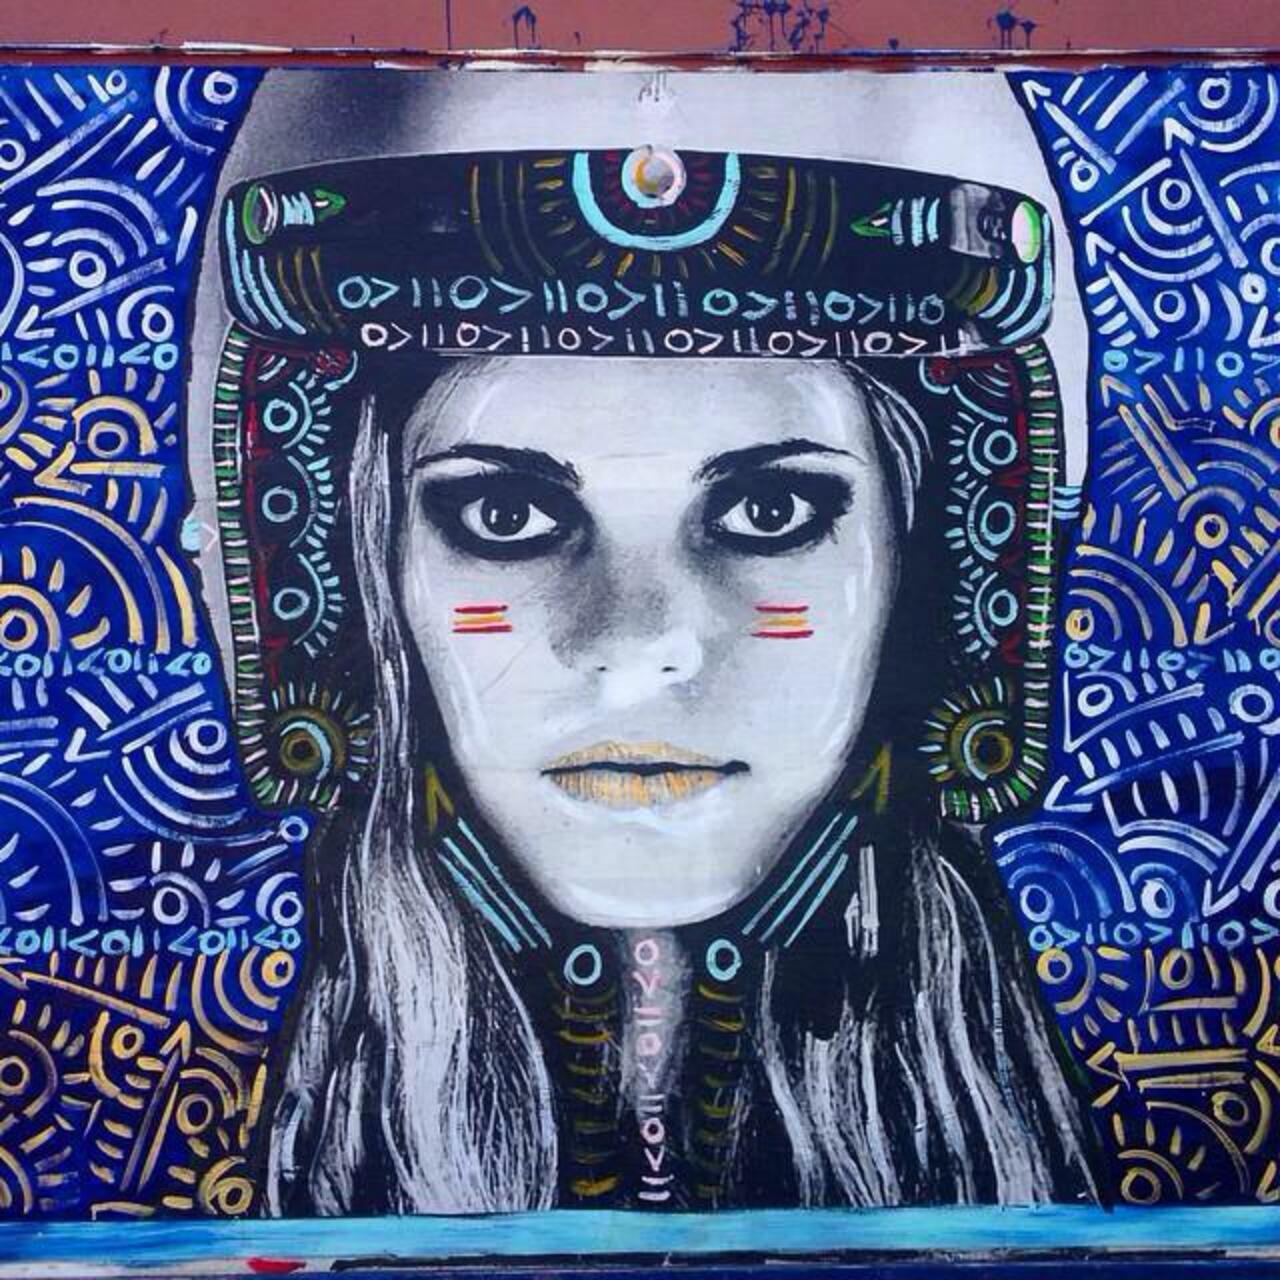 Street Art by Kelcey Fisher in LA
Photo by djcatnap

#art #arte #graffiti #streetart http://t.co/AOO6n3wWKj